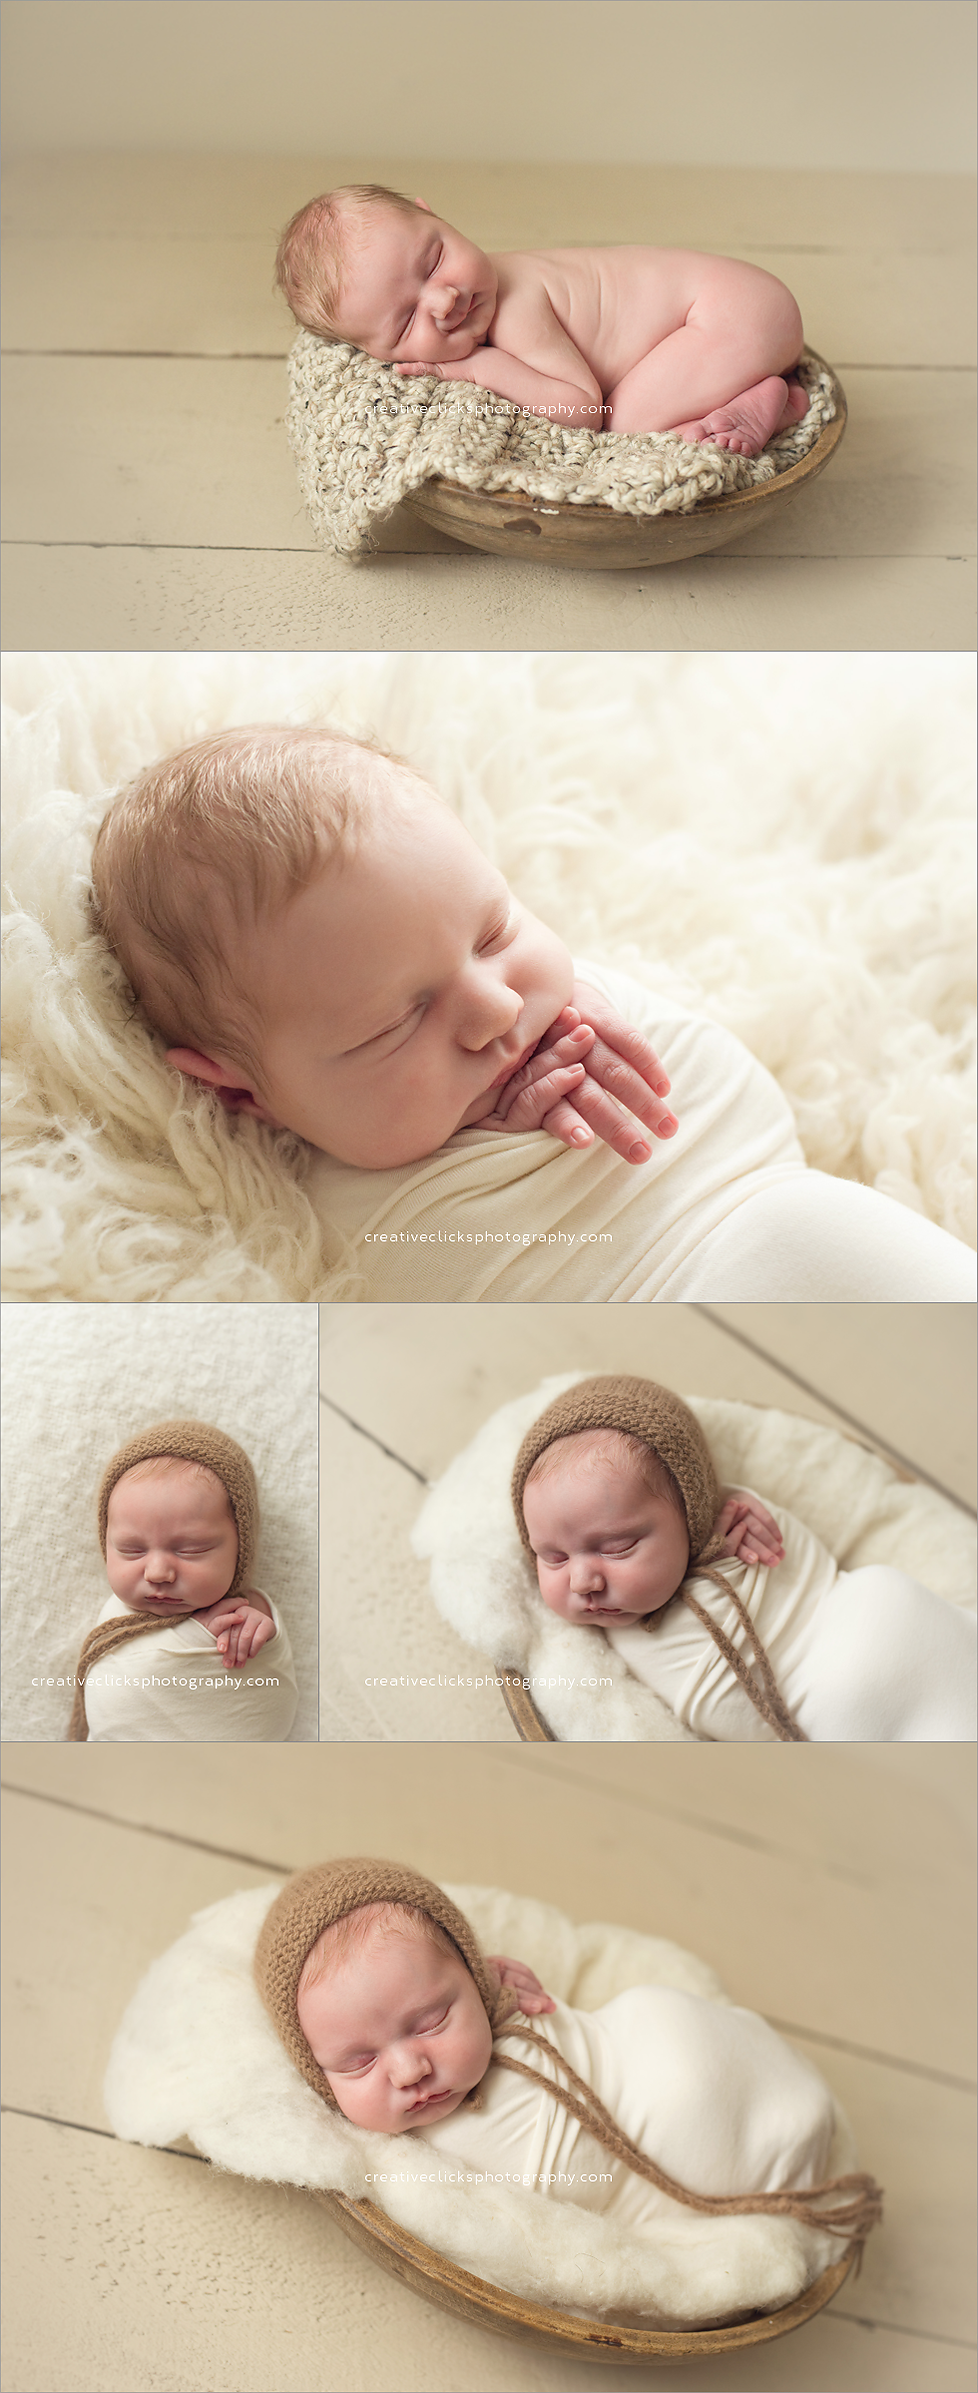 Trenton-niagara-newborn-baby-photographer